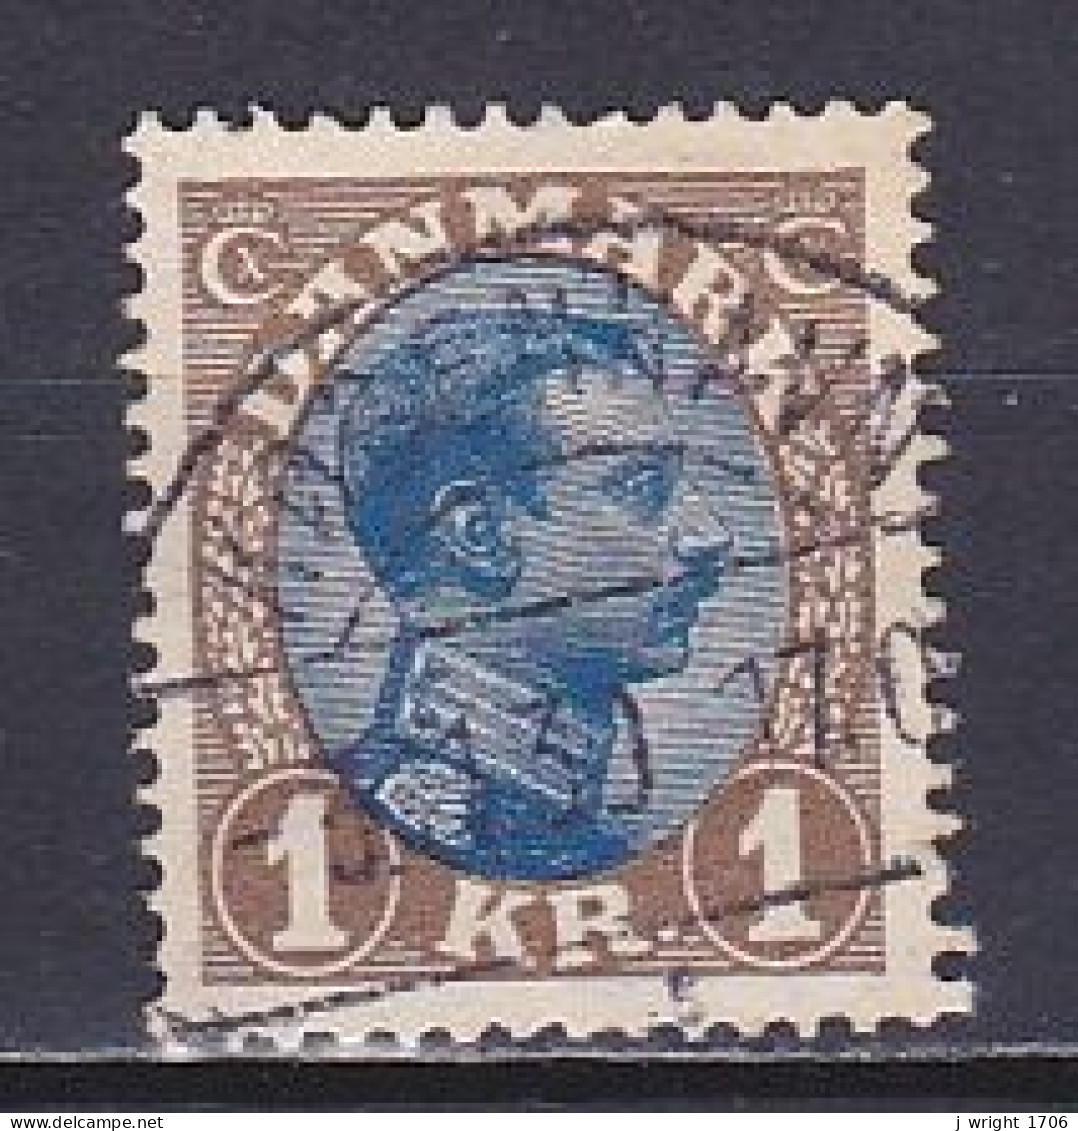 Denmark, 1922, King Christian X, 1kr, USED - Usati